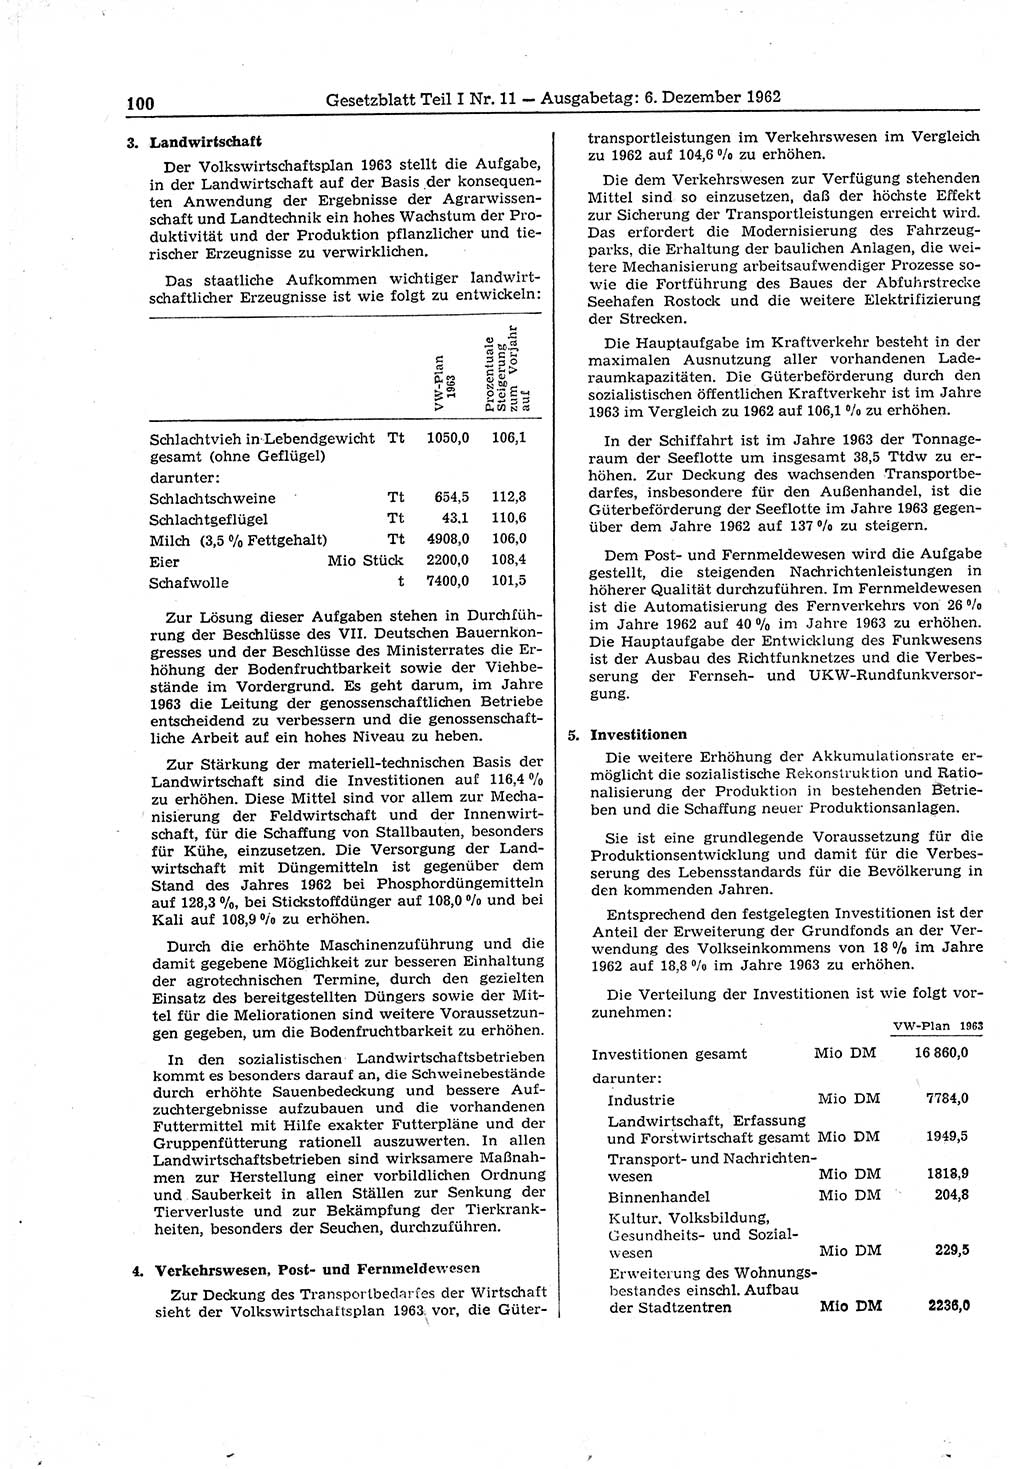 Gesetzblatt (GBl.) der Deutschen Demokratischen Republik (DDR) Teil Ⅰ 1962, Seite 100 (GBl. DDR Ⅰ 1962, S. 100)